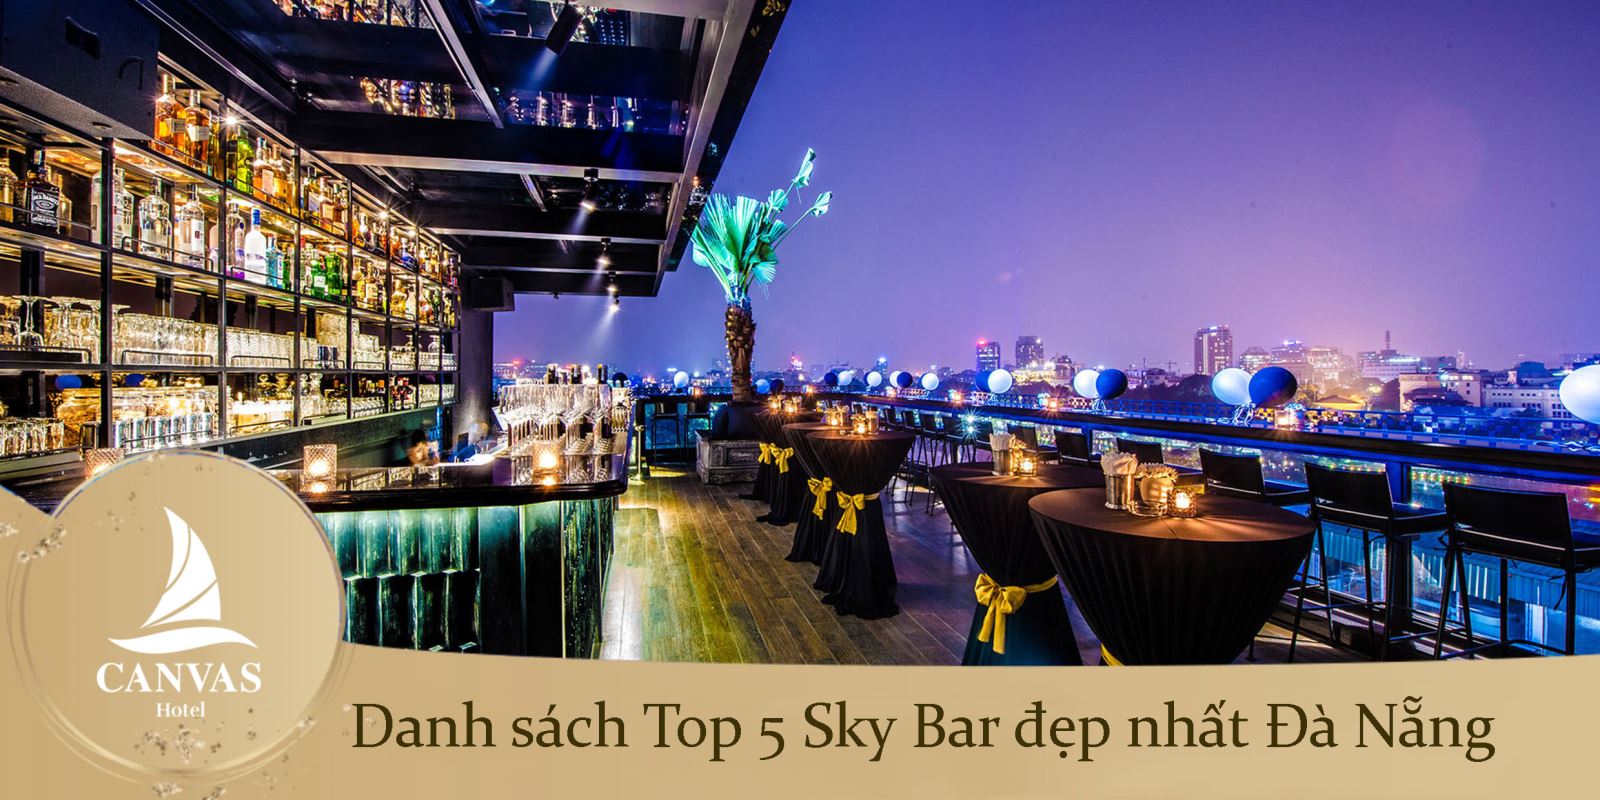 Danh sách Top 5 Sky Bar đẹp nhất Đà Nẵng